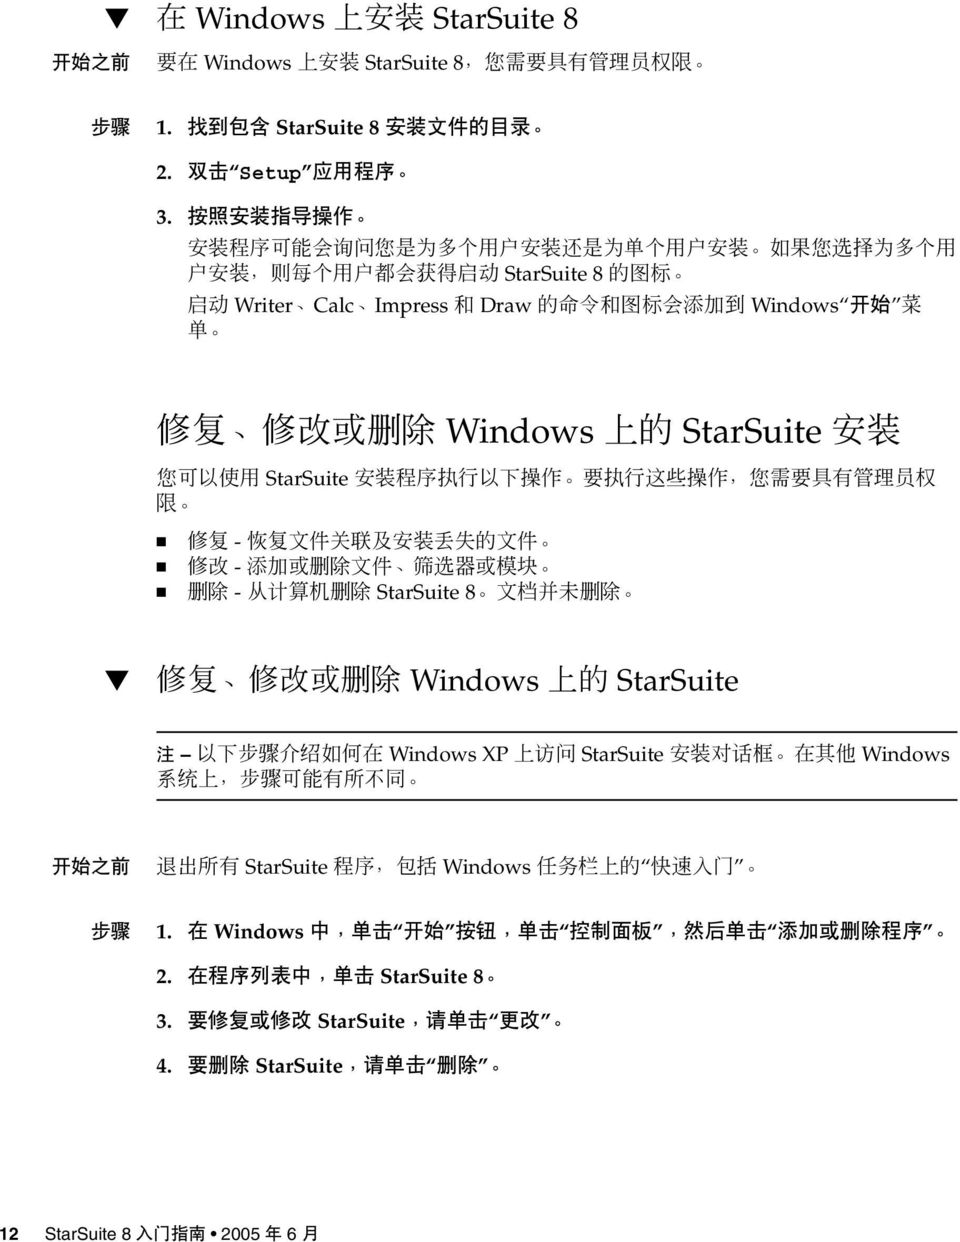 - - - StarSuite 8 Windows StarSuite Windows XP StarSuite Windows